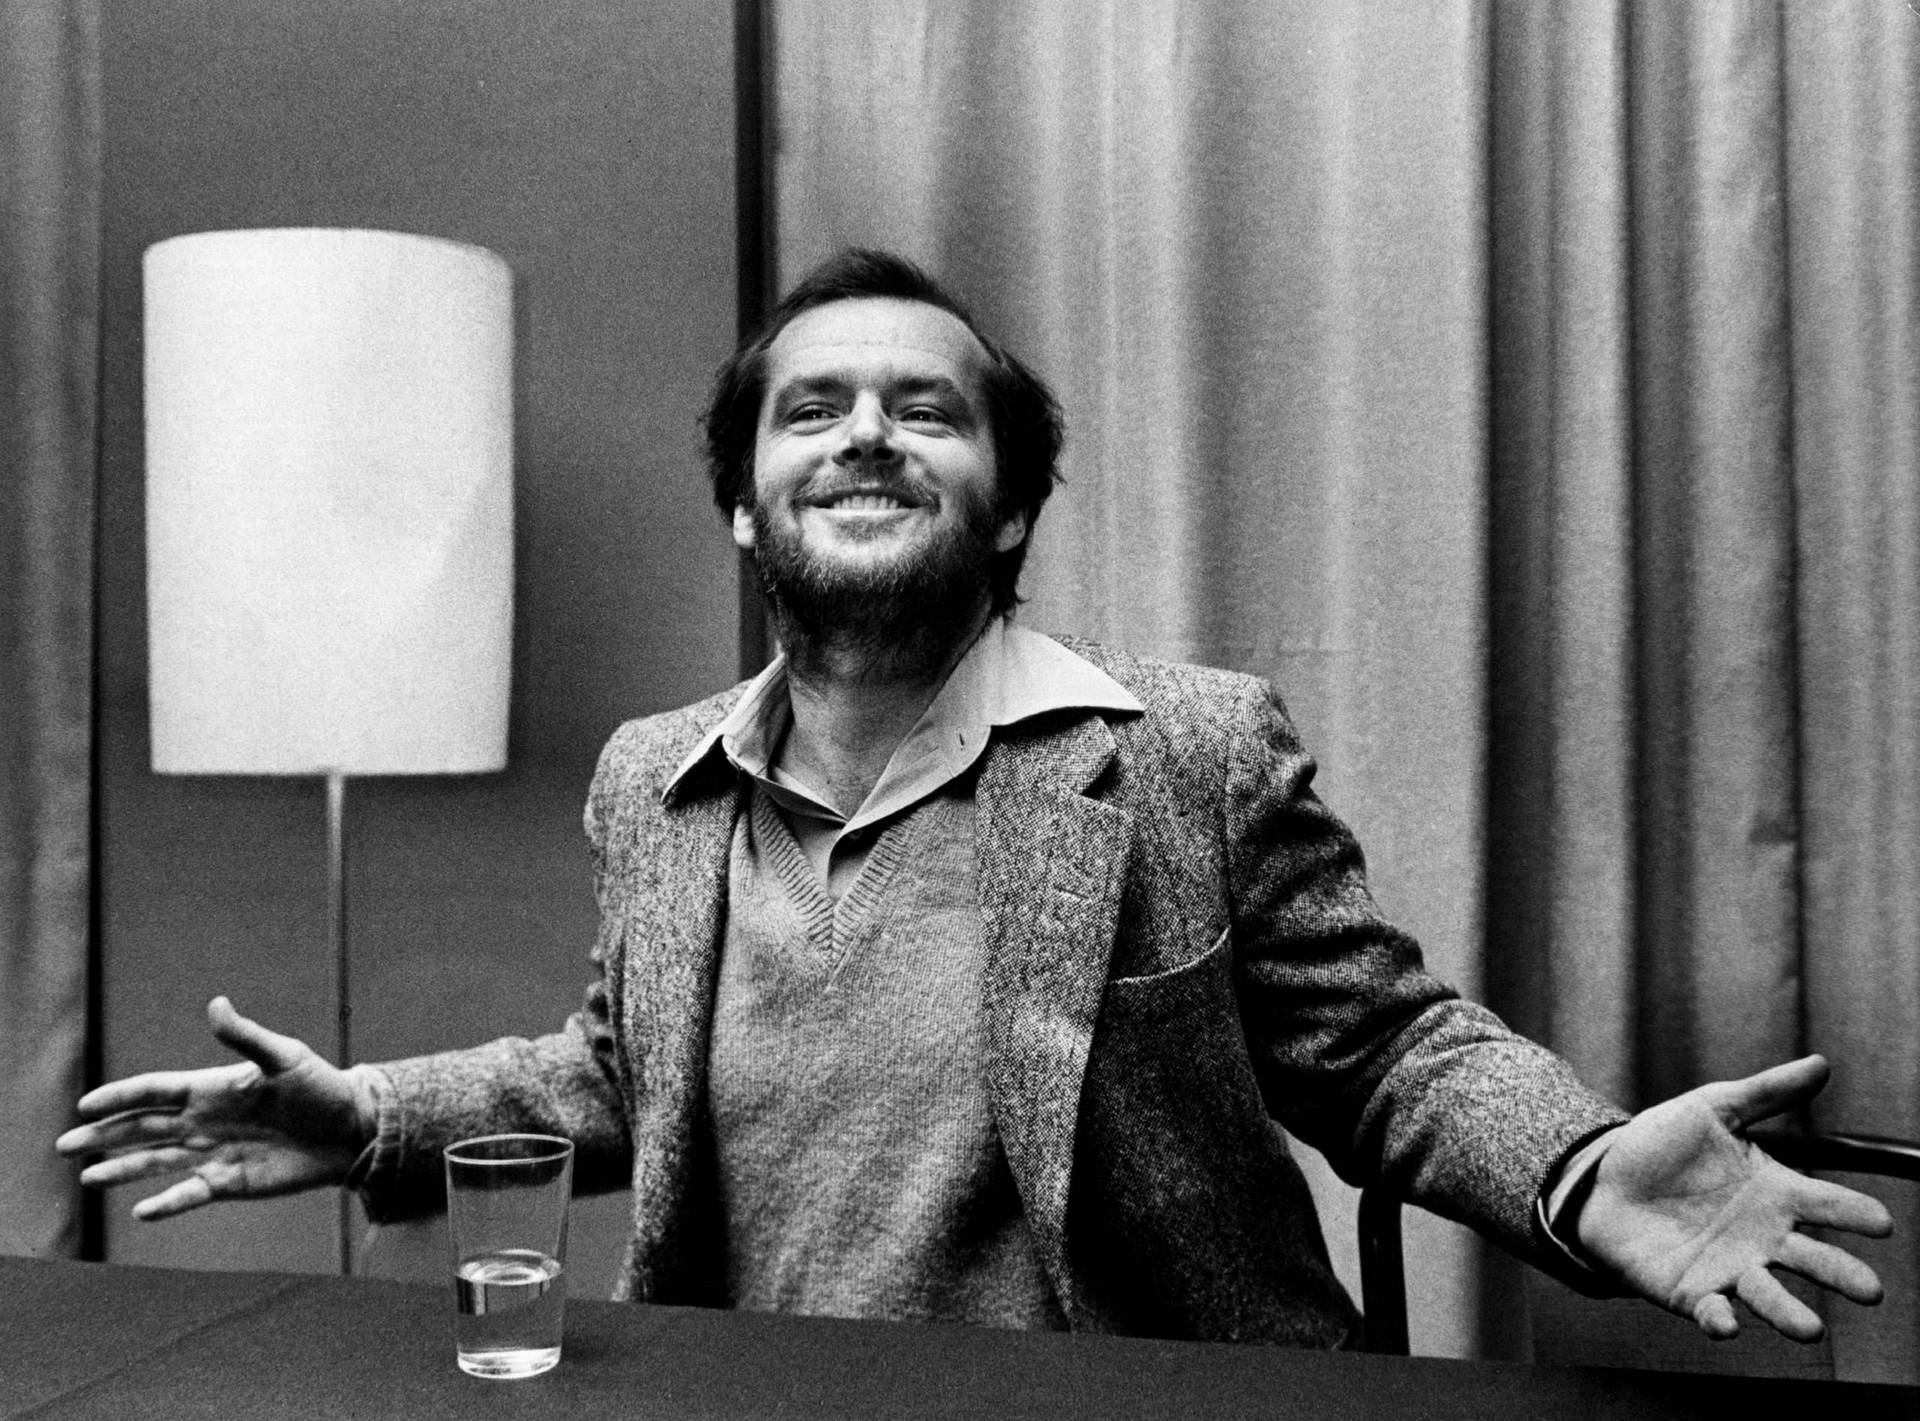 Jack Nicholson 70's Vintage Photo Picture